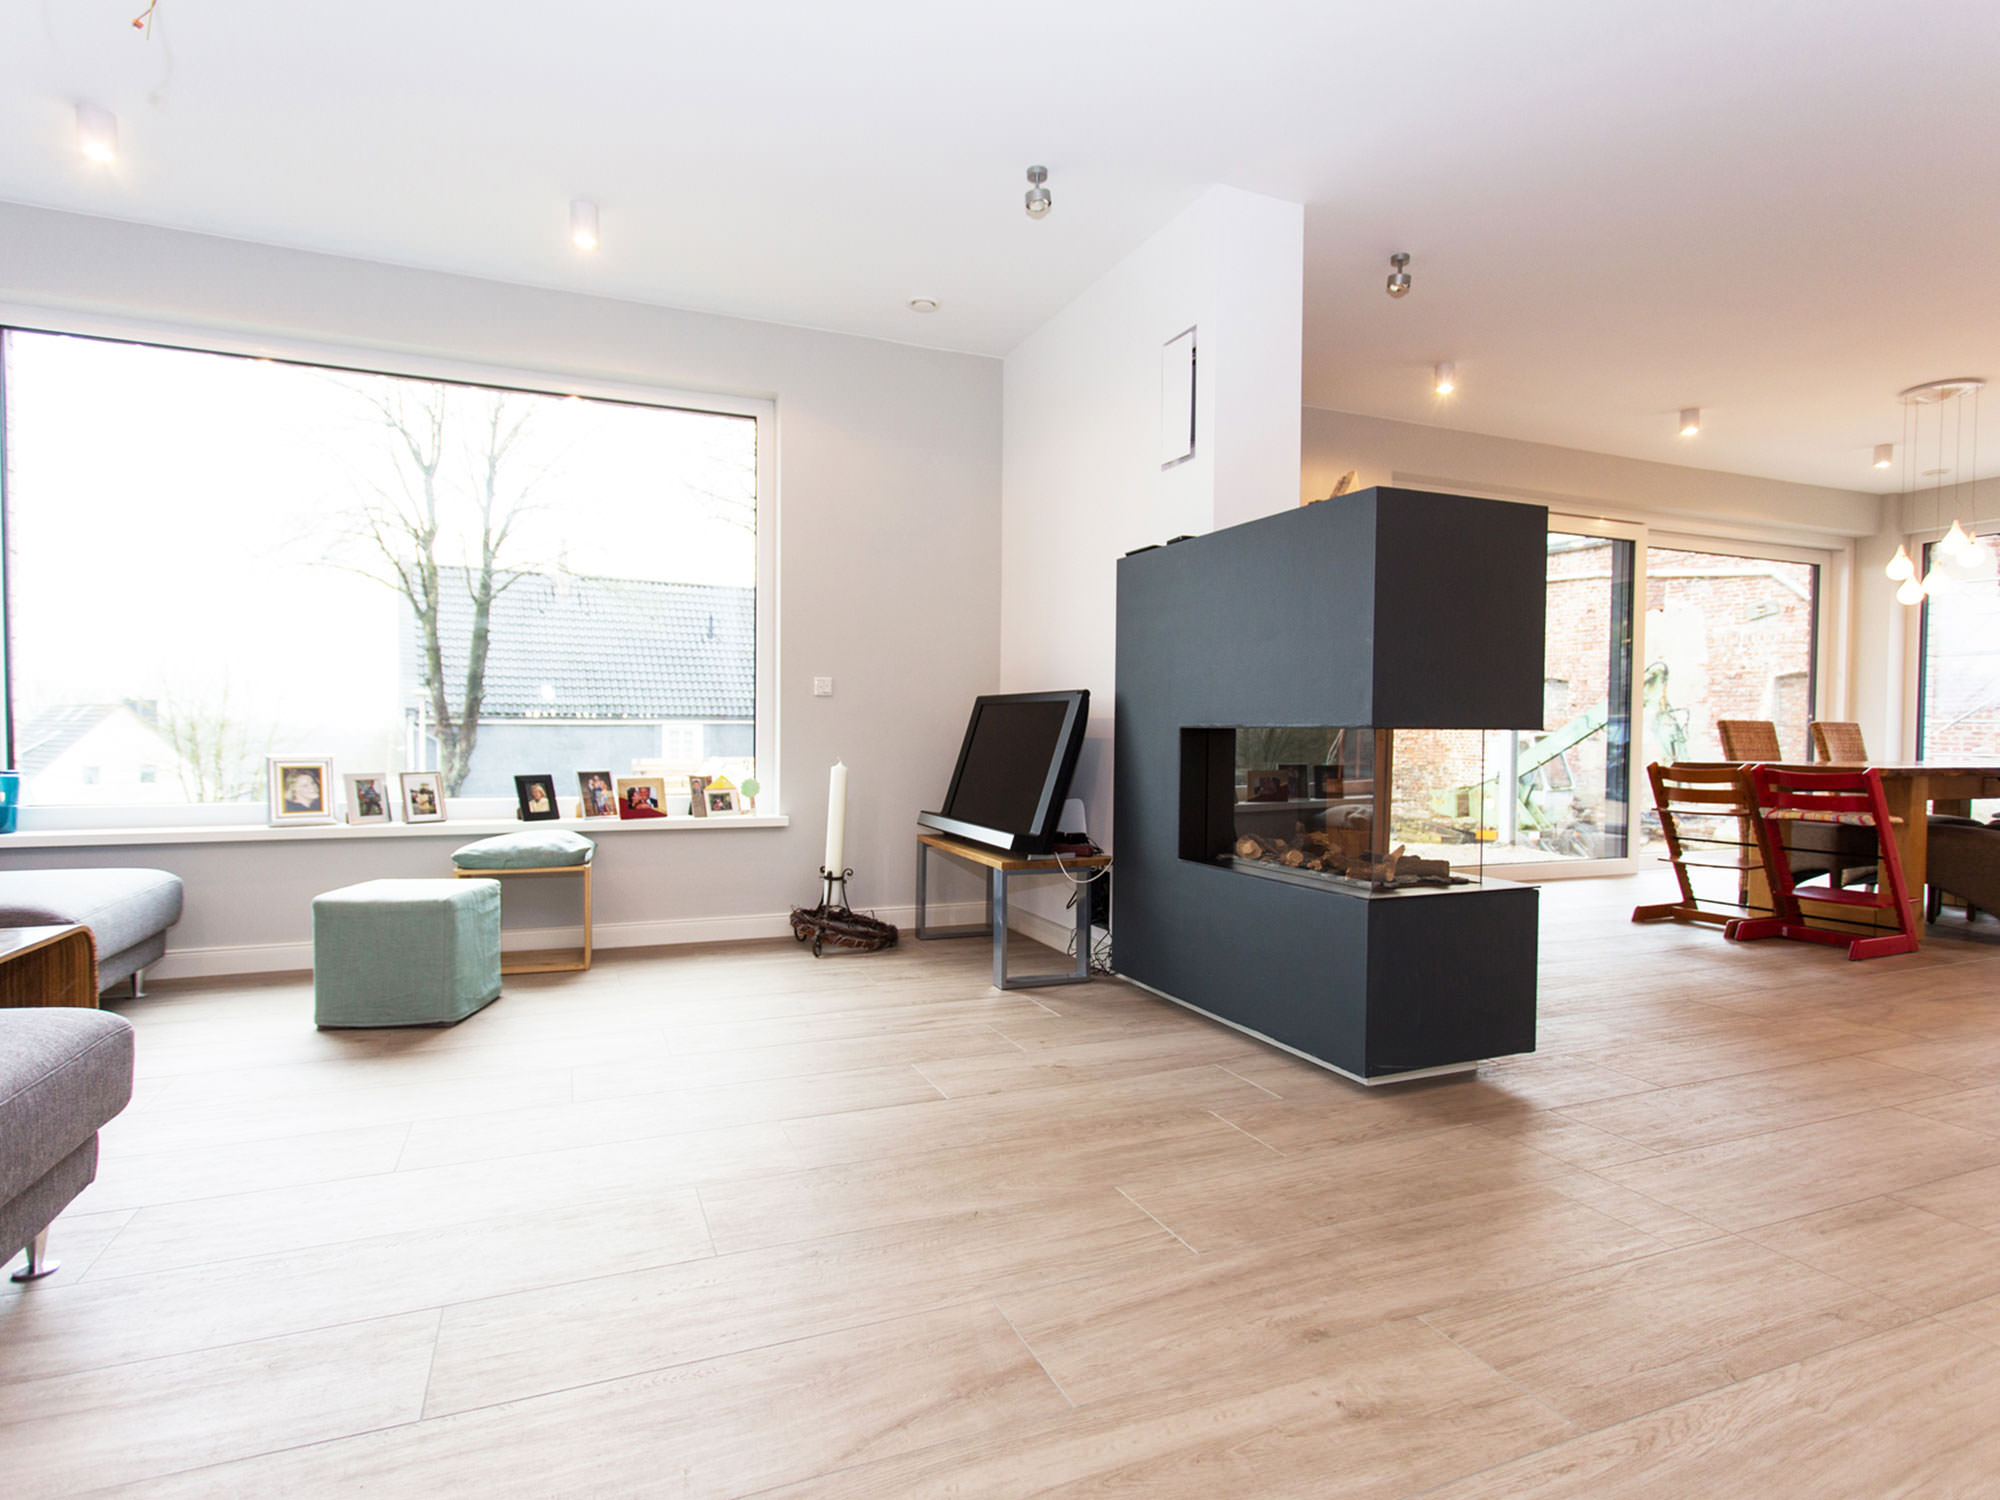 Neubau Haus M Wuppertal - ah-architektur.de | Alisic-Haverkamp – Wir verfolgen das Ziel, funktionelle, kostenbewusste und ambitioniert gestaltete Architektur zu schaffen, die einen ah-Effekt auslöst.